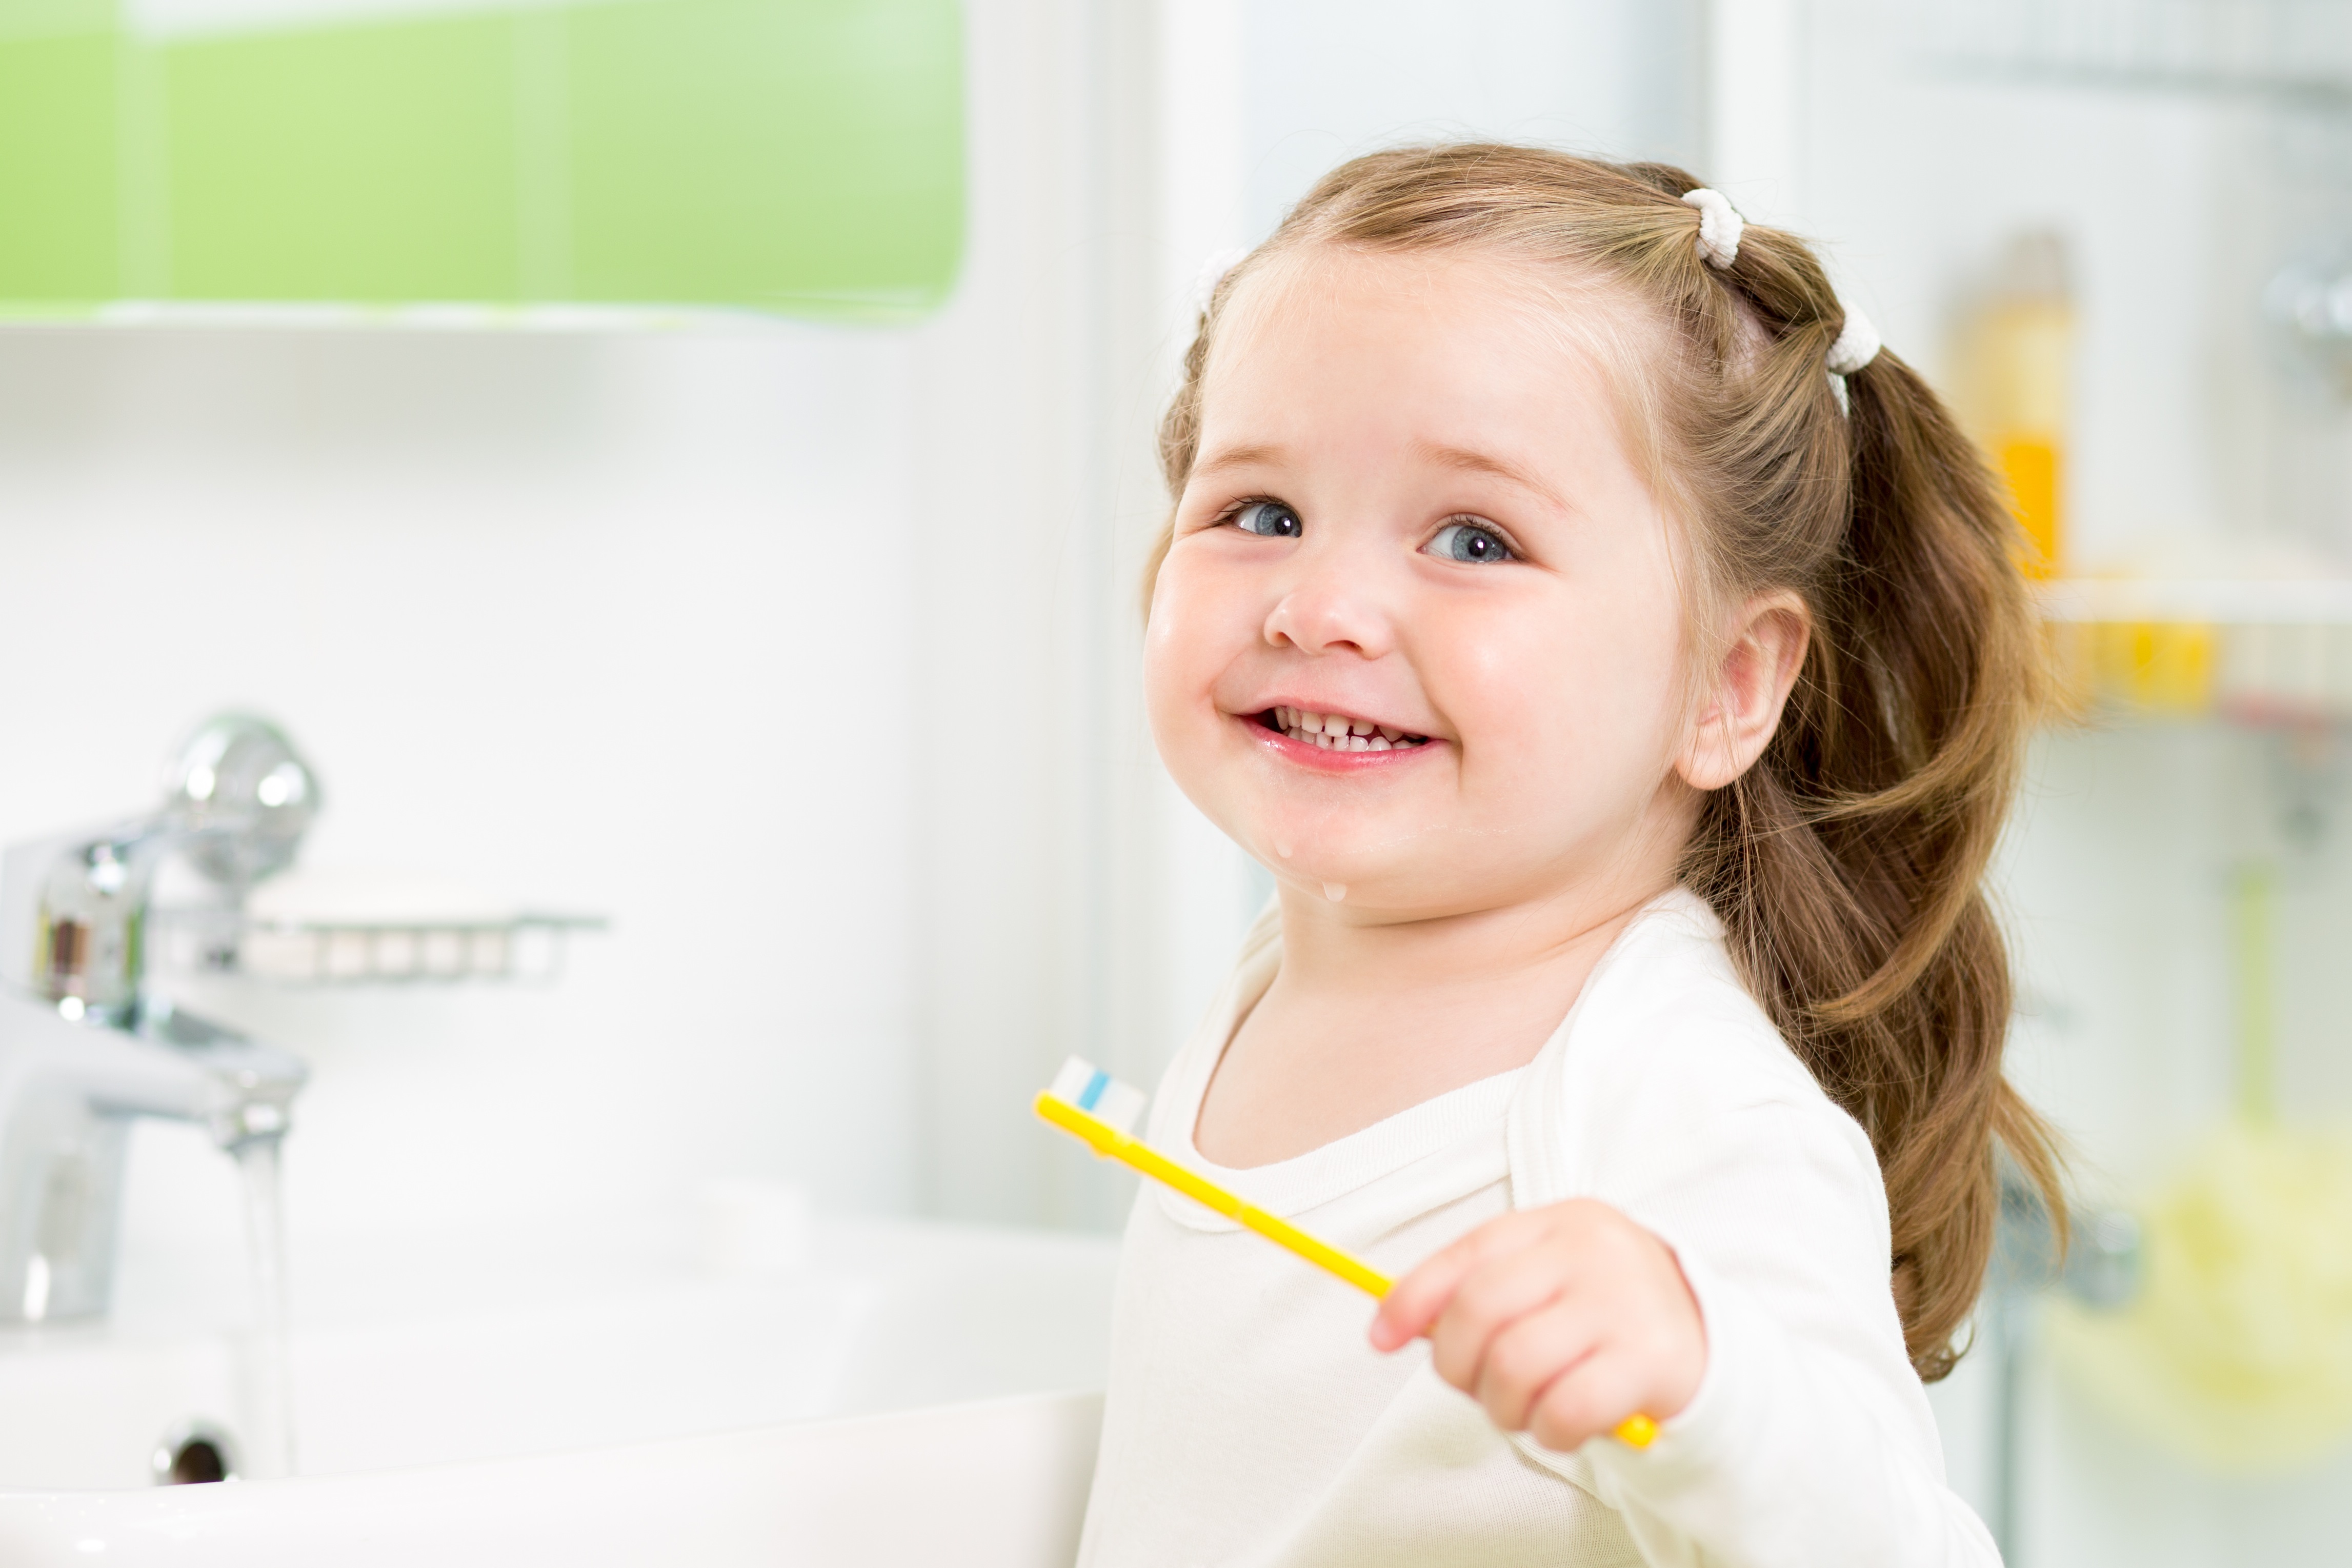 odontopediatria en Carabanchel - lavandose los dientes